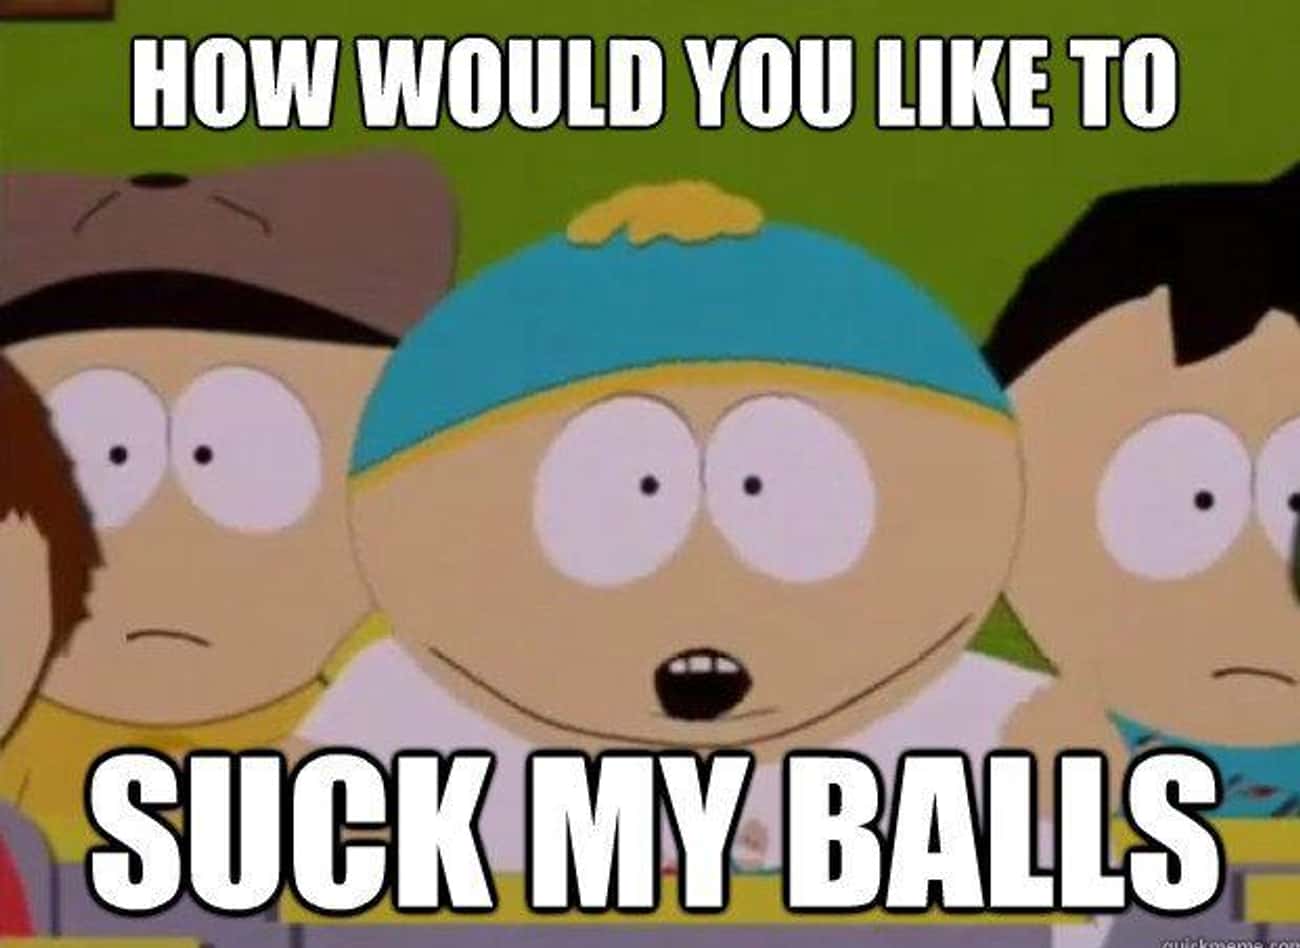 Eric Cartman&#39;s #1 Life Goal